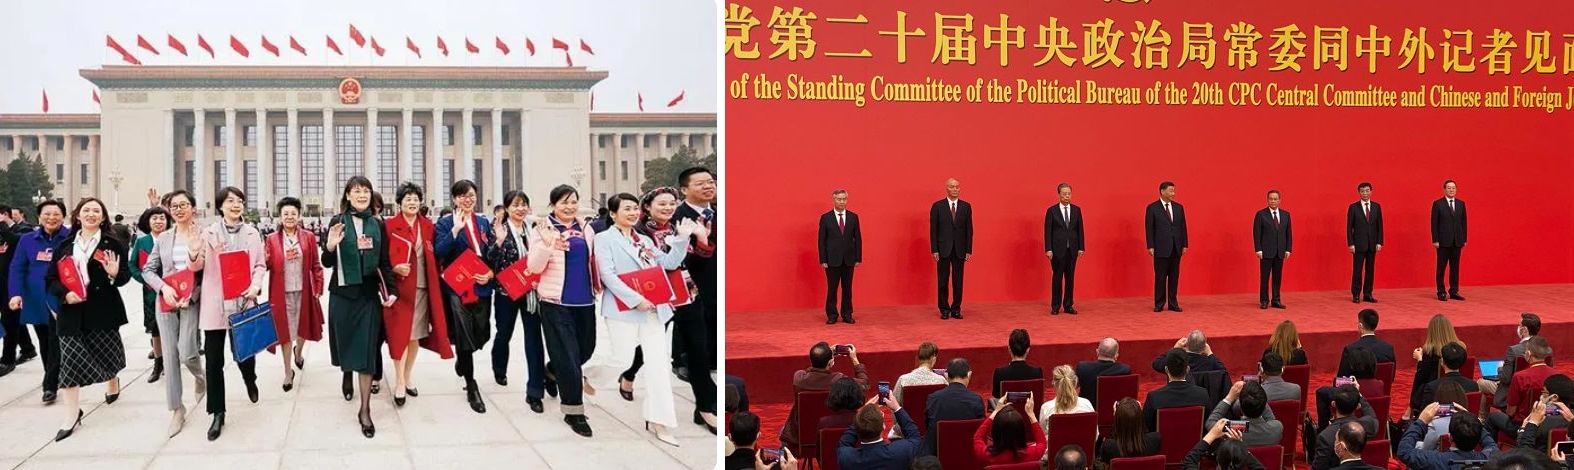 [사진] (왼쪽) 제13기 중국 전국인민대표대회 5차 회의 종료 후 인민대회당을 나서는 여성들의 모습  /  (오른쪽) 2022년 10월 23일 출범한 중국 공산당 중앙정치국 위원회 [사진 출처: 신화통신, 로이터]  